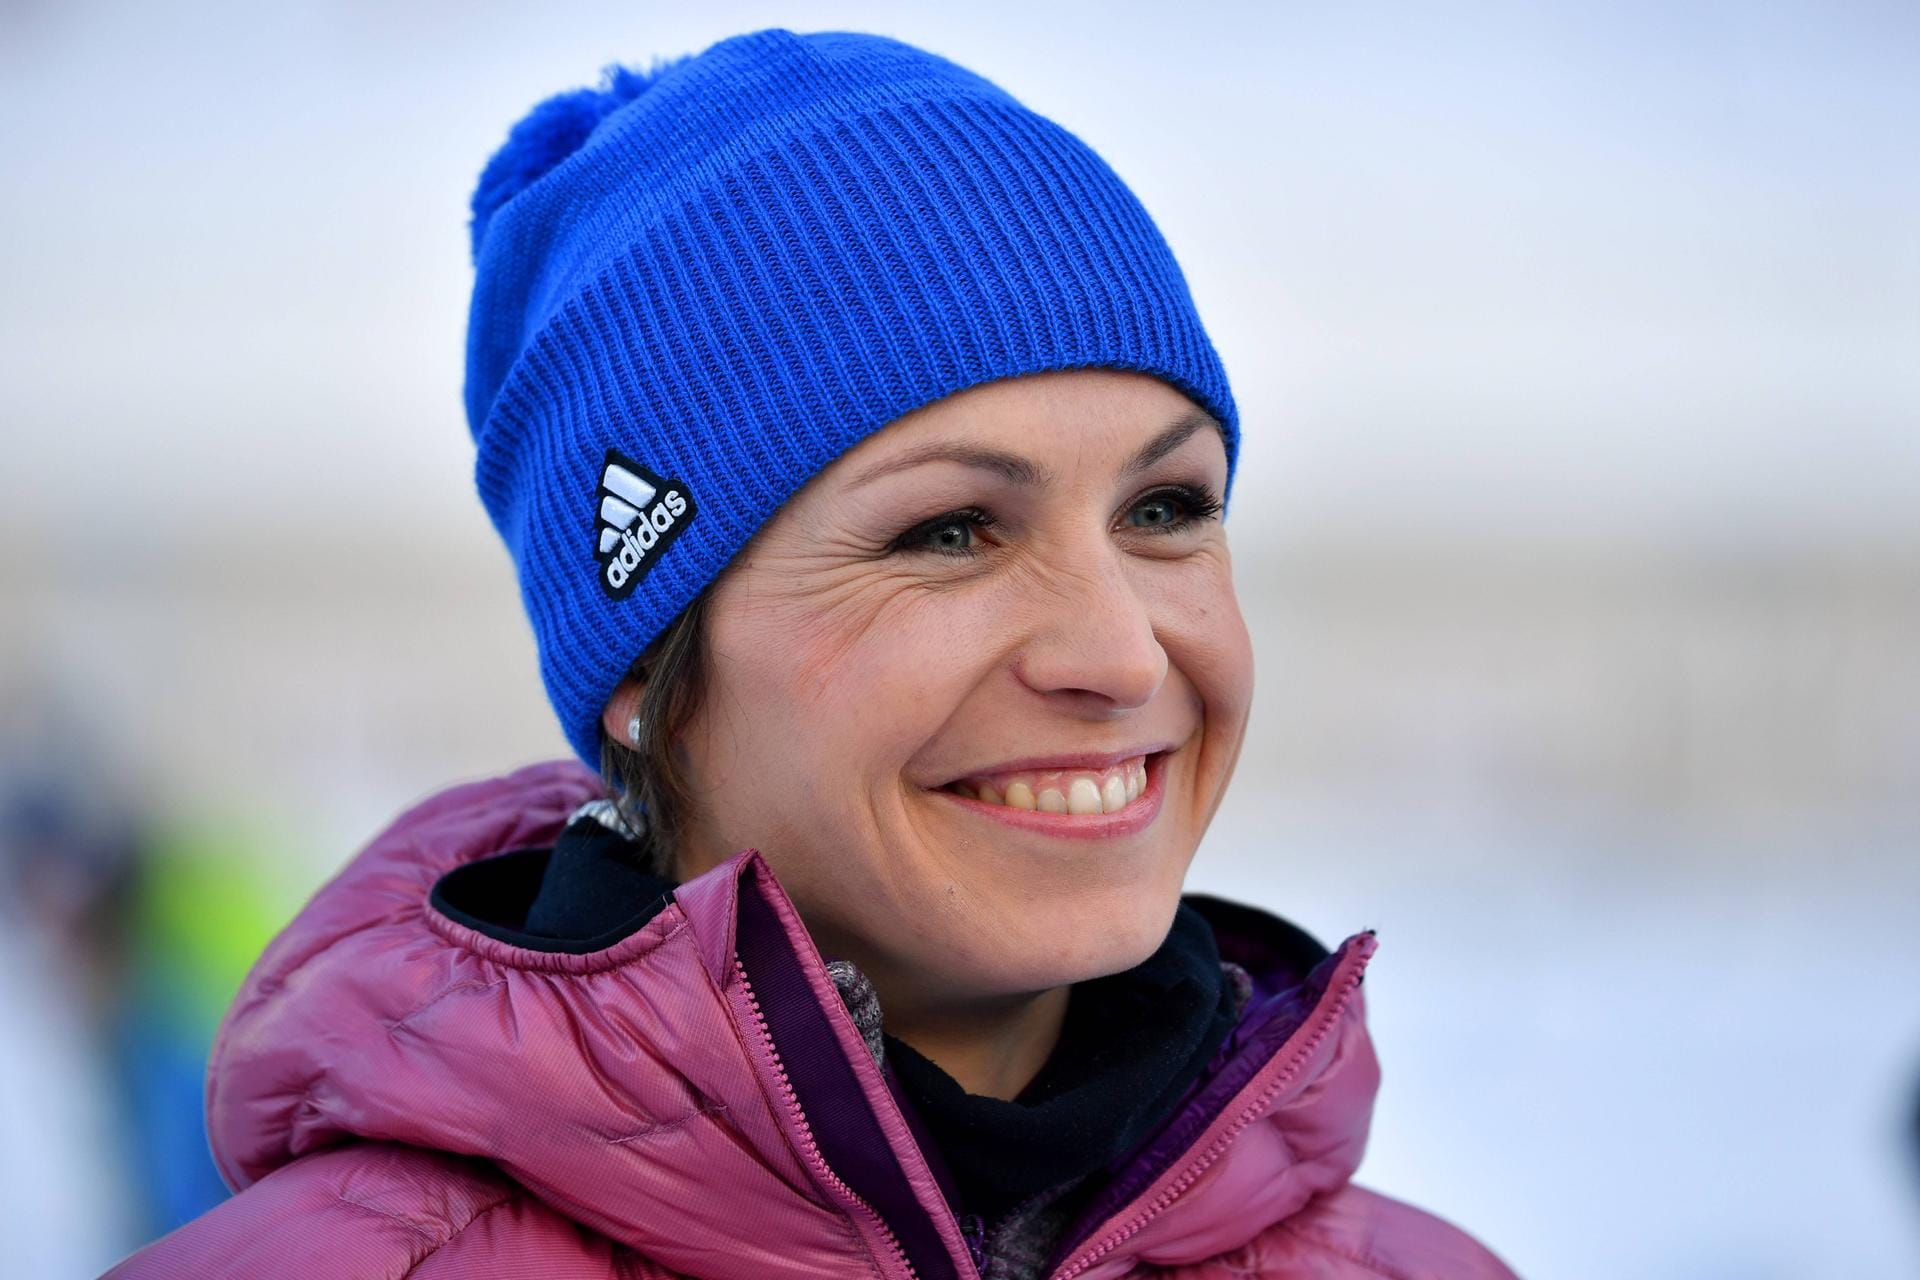 Zwei Mal Gold bei Olympia, zwölf Mal Erste bei den Weltmeisterschaften, Karriere-Ende mit 25. Magdalena Neuner war seit 2006 der Stern am Biathlon-Himmel. Doch mit den Erfolgen kamen die Probleme. 2009 und 2010 wurde Neuner Opfer von Stalkern – Fans belagerten den Garten ihres Hauses. 2012 gewann sie noch einmal den Gesamtweltcup – und machte Schluss mit dem Ski-Sport.